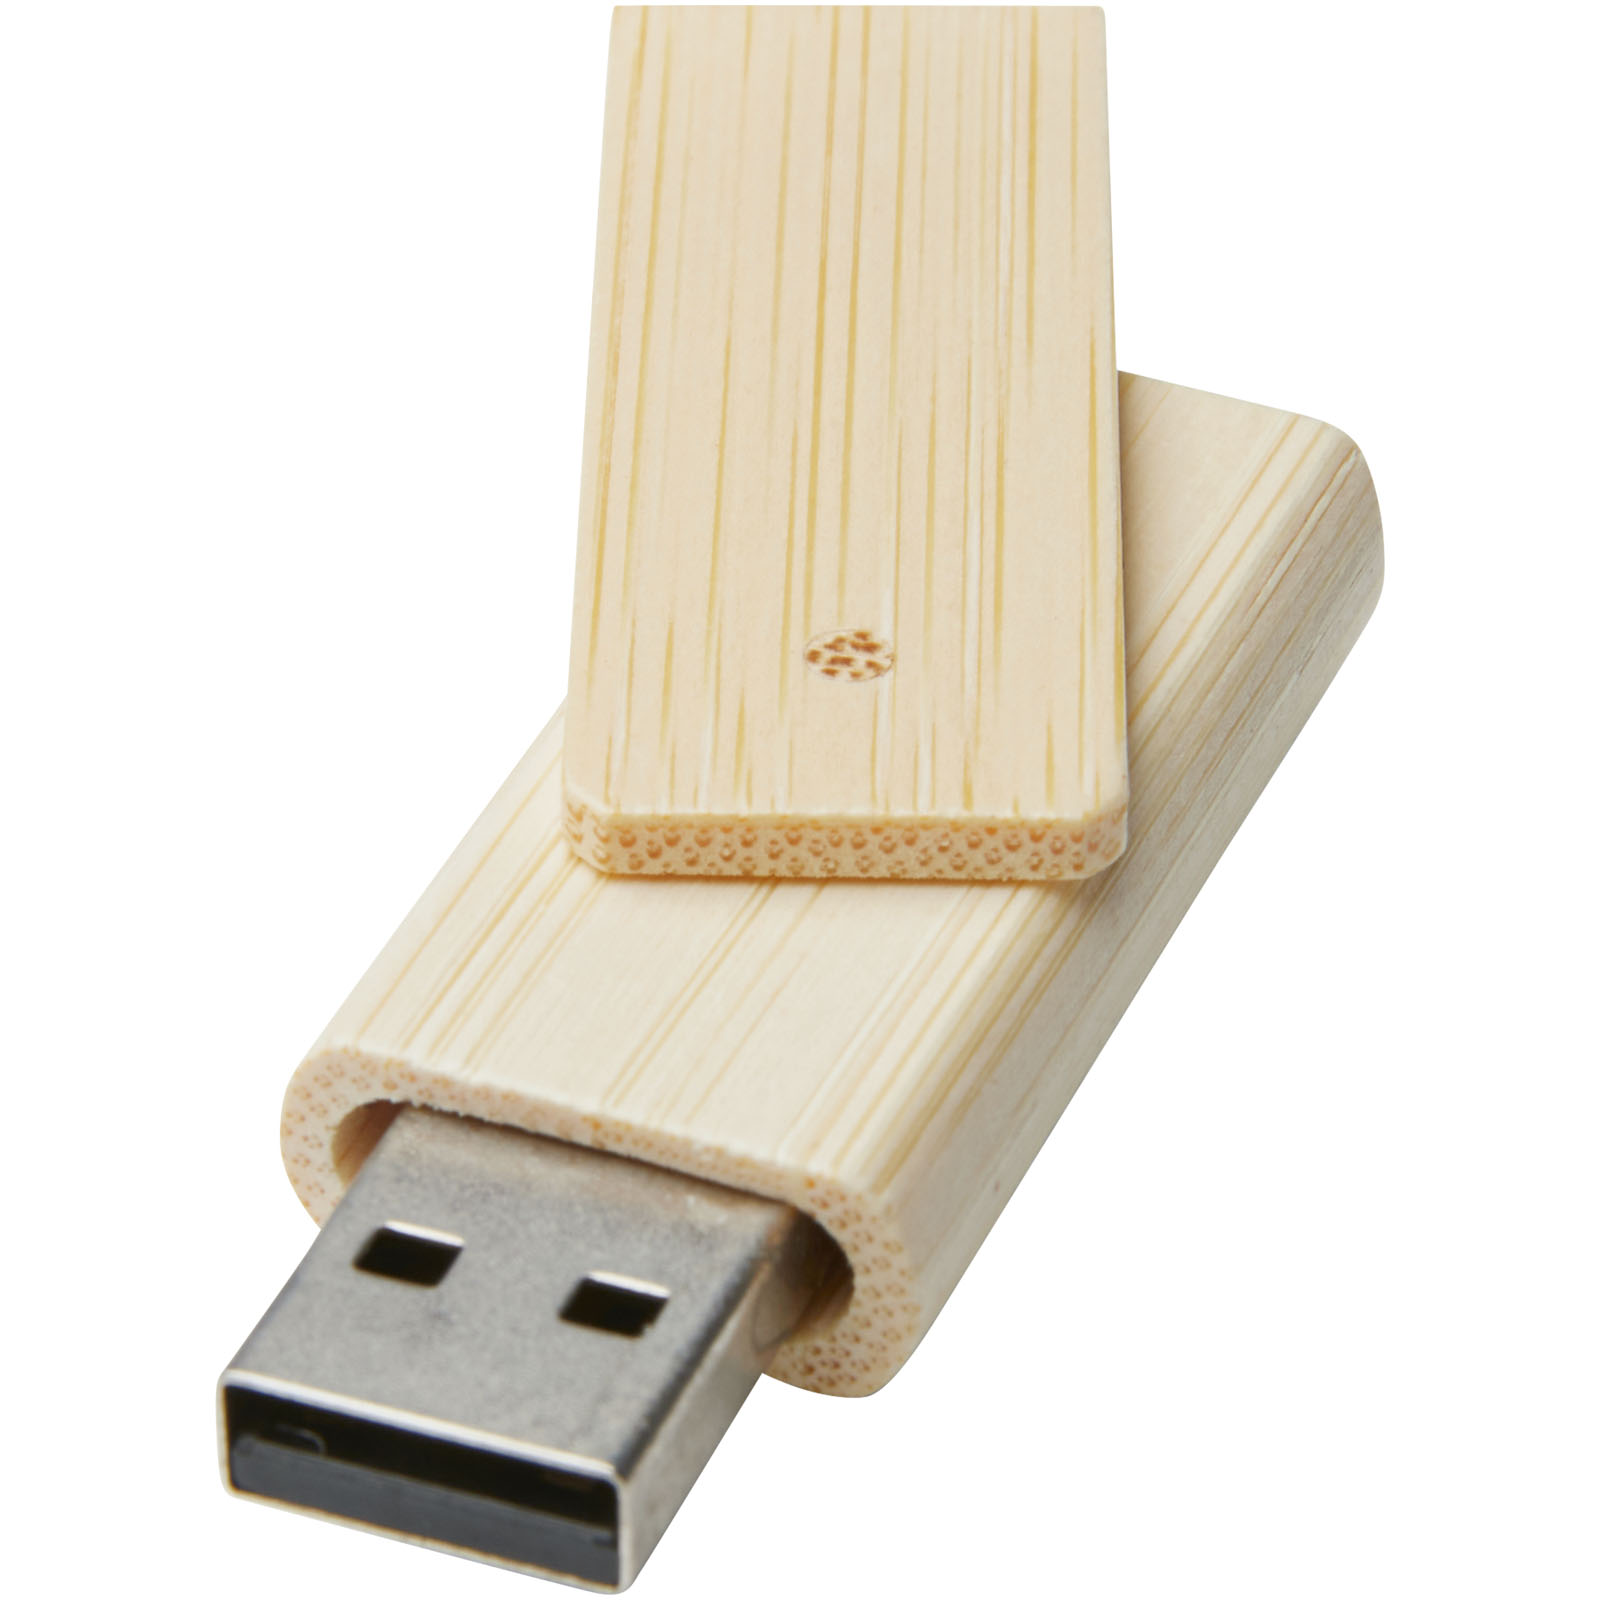 Clés USB publicitaires - Clé USB Rotate 16 Go en bambou